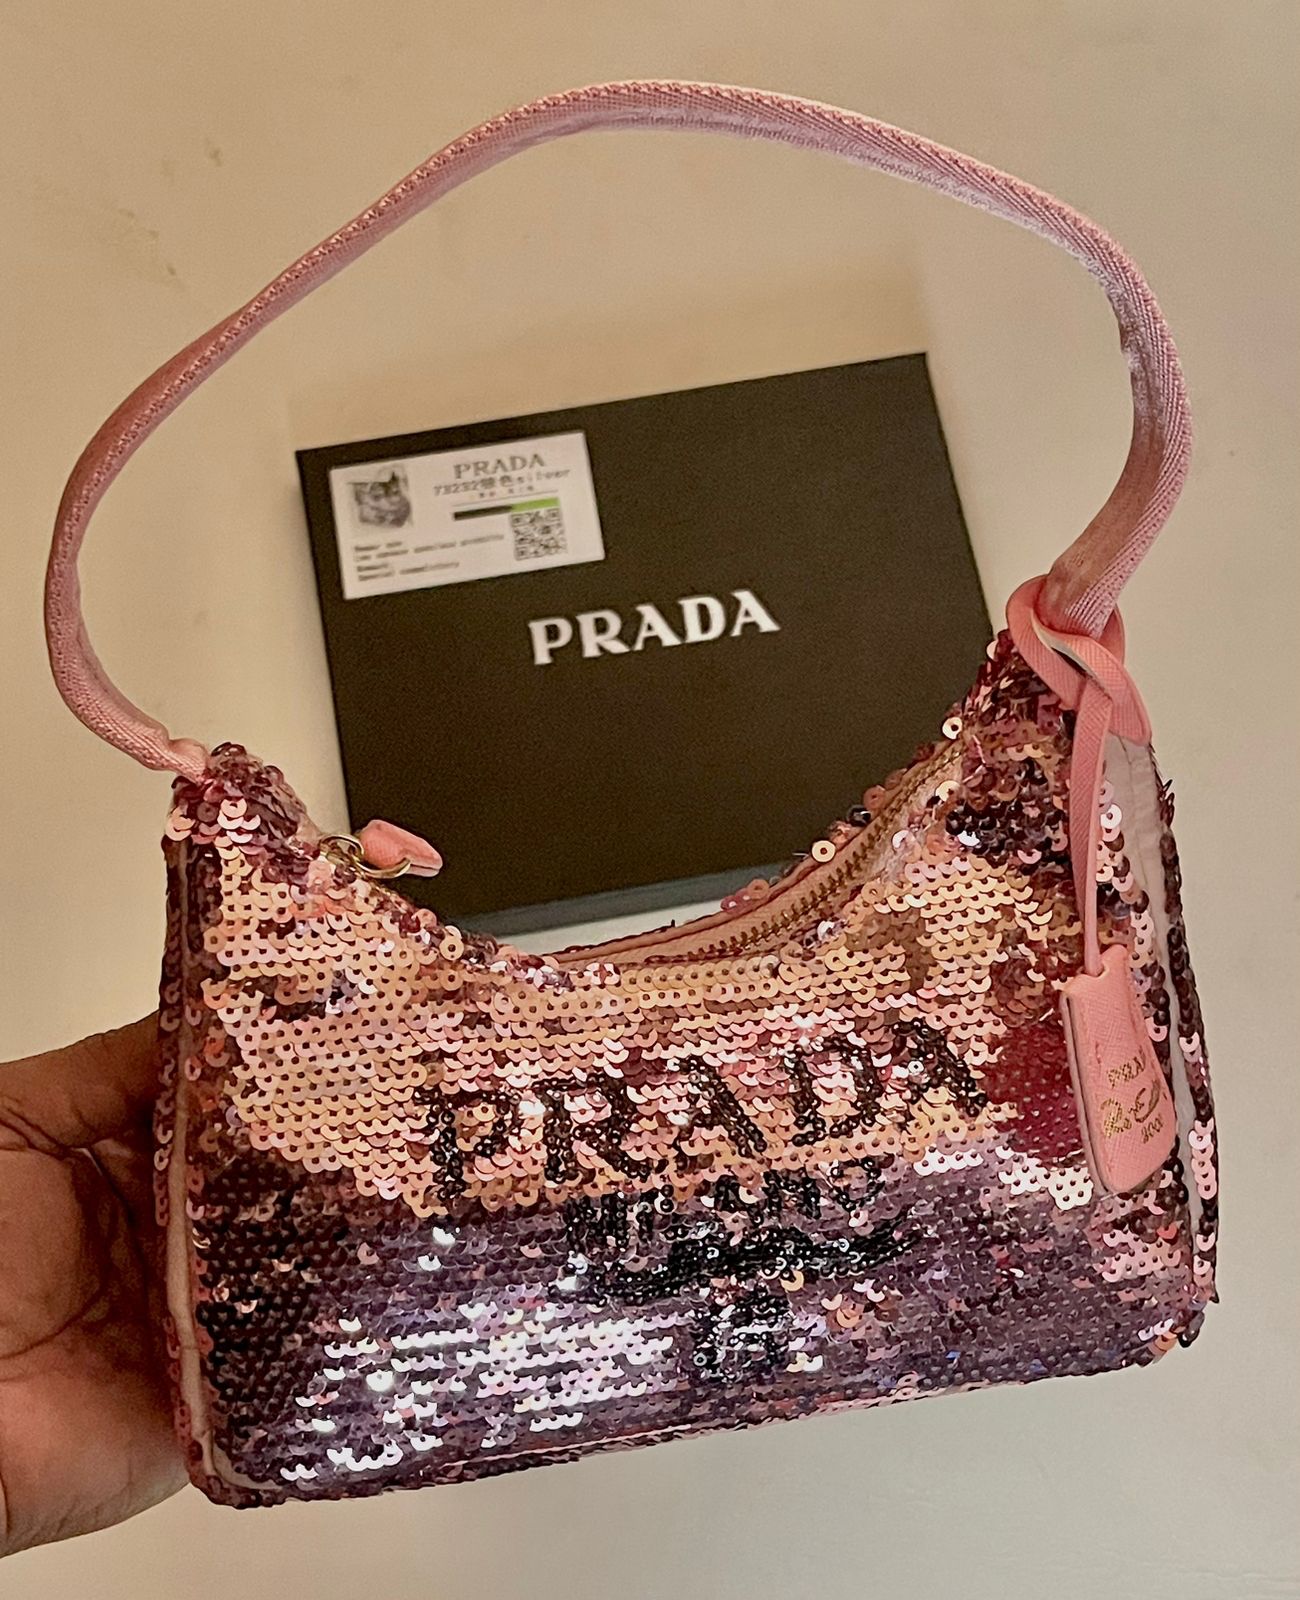 Sequin Embellished Handbag